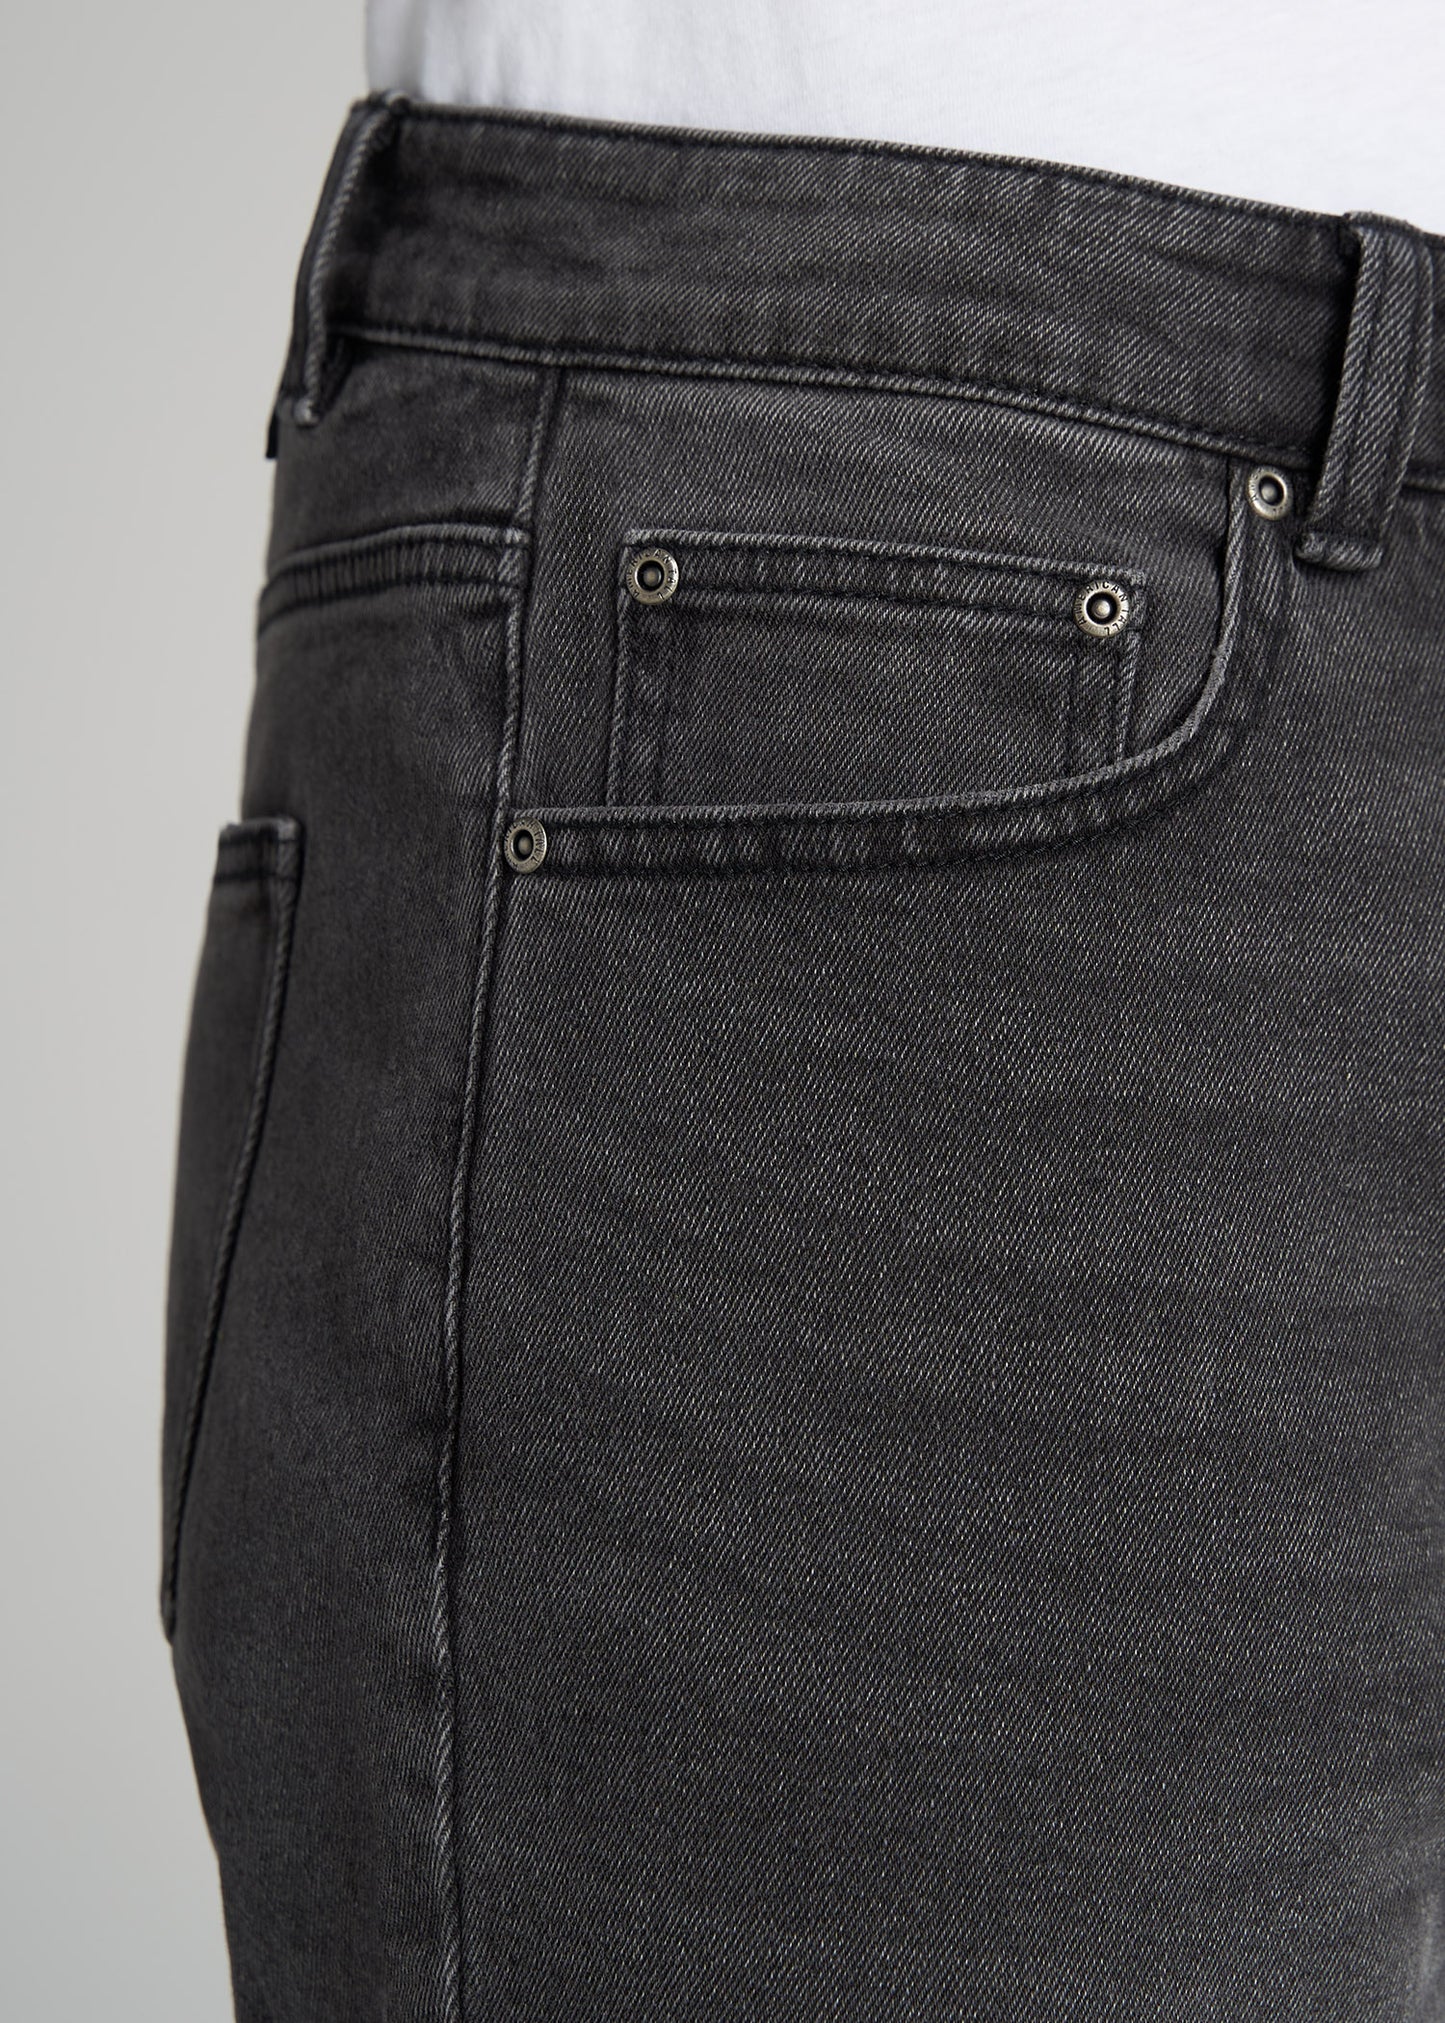    American-Tall-Men-Denim-Shorts-Vintage-Faded-Black-pocket